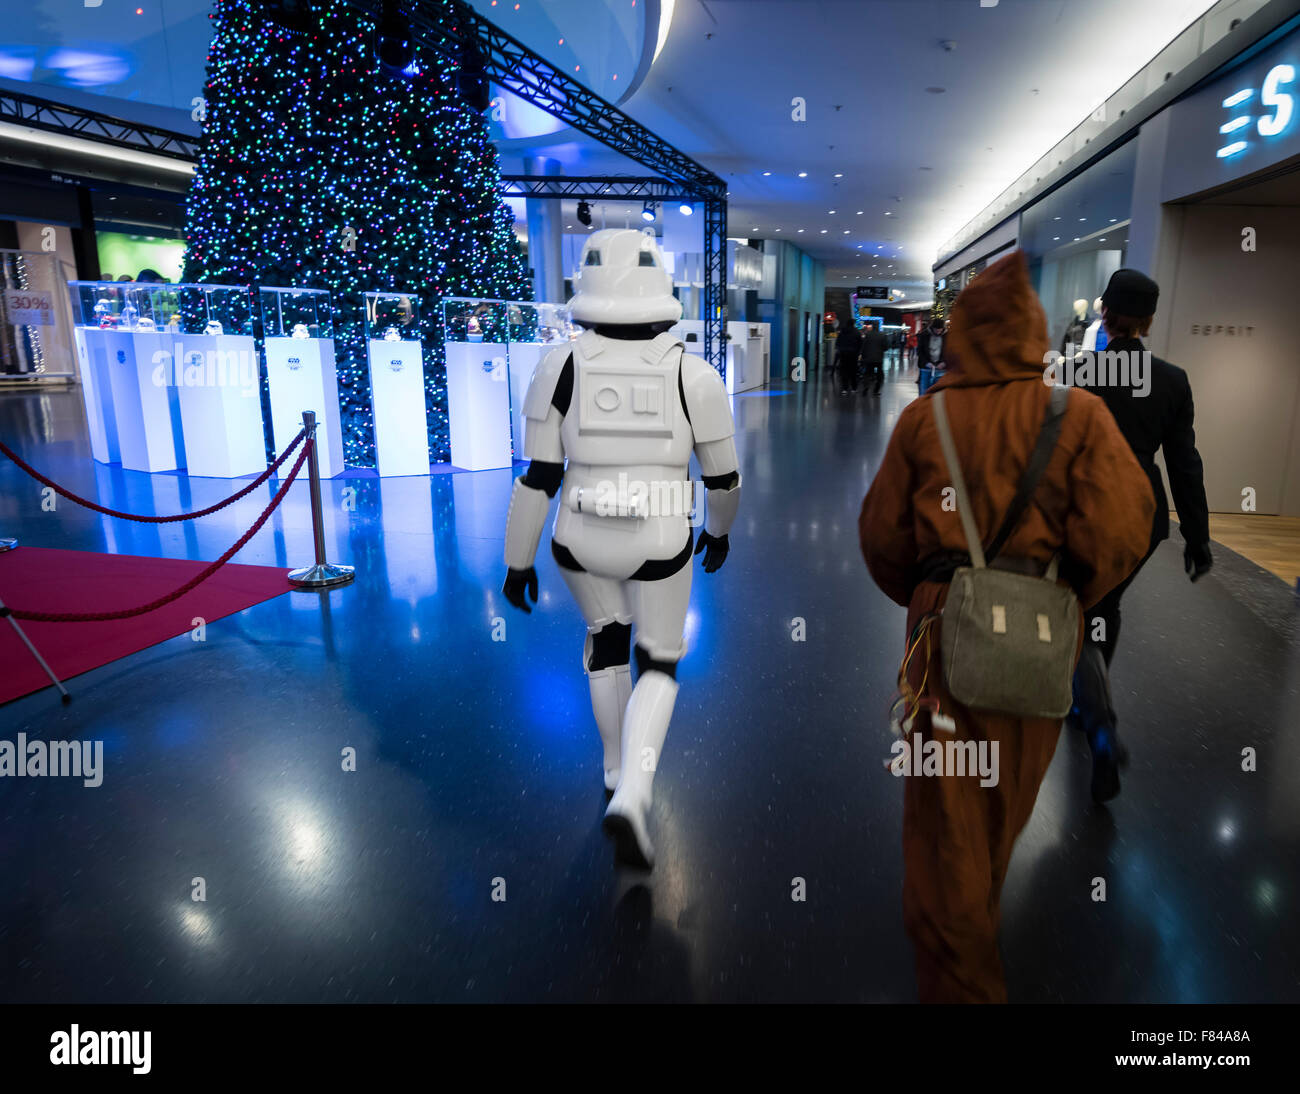 Zurigo, Svizzera. 05 Dic, 2015. Membri della Swiss-Garrison Star Wars costuming club, tutte vestite come Star Wars caratteri, sono a piedi circa un Zurigo centro commerciale. Credito: Erik Tham/Alamy Live News Foto Stock